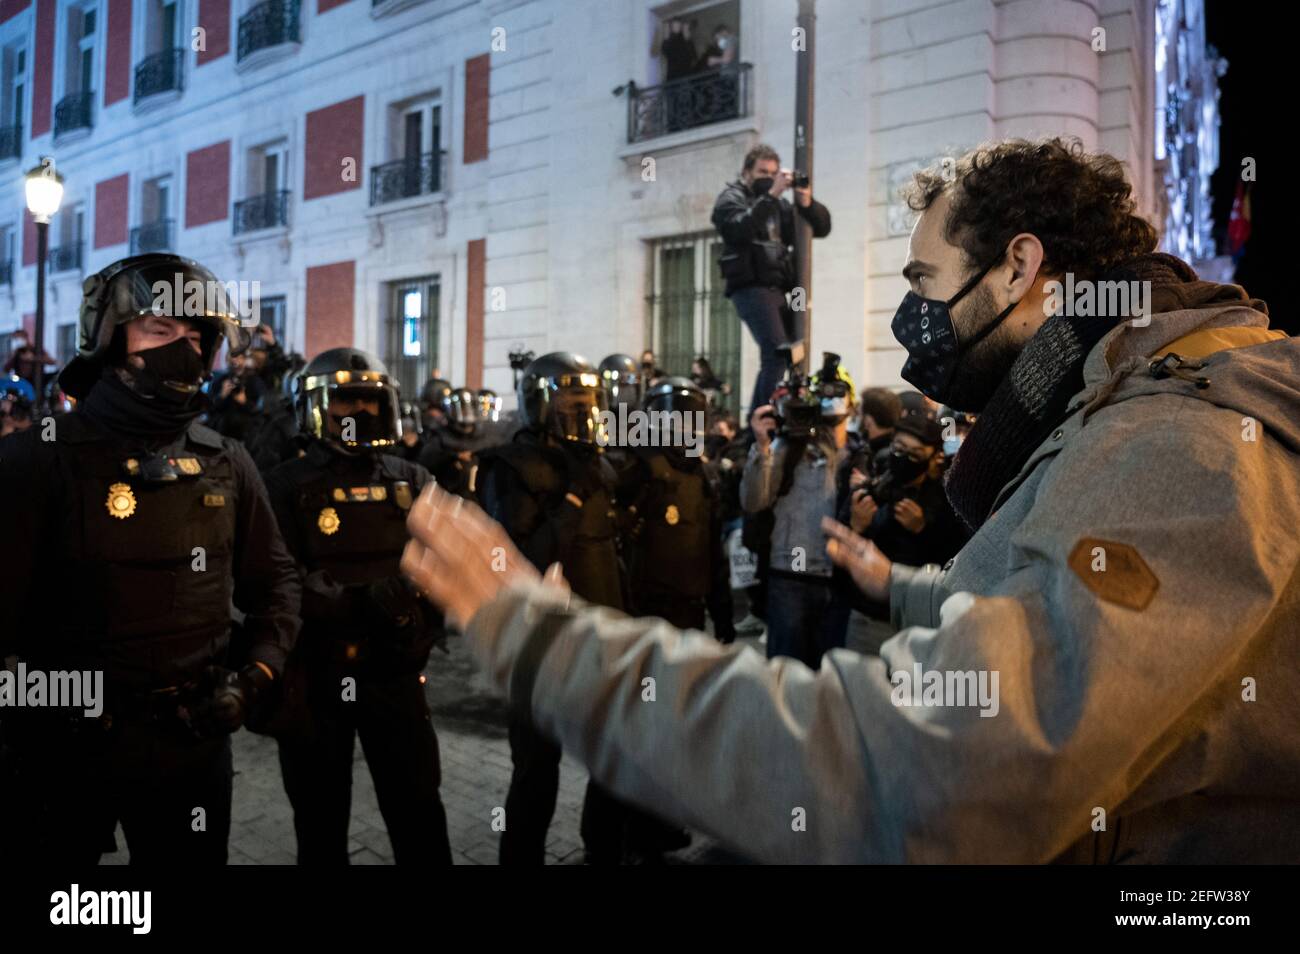 Madrid, Spanien. Februar 2021, 17th. Ein Protestler, der bei einer Demonstration gegen die Inhaftierung des spanischen Rappers Pablo Hasel wegen einiger Liedtexte und Tweets, die die spanische Monarchie kritisieren, der Polizei gegenübersteht. Quelle: Marcos del Mazo/Alamy Live News Stockfoto